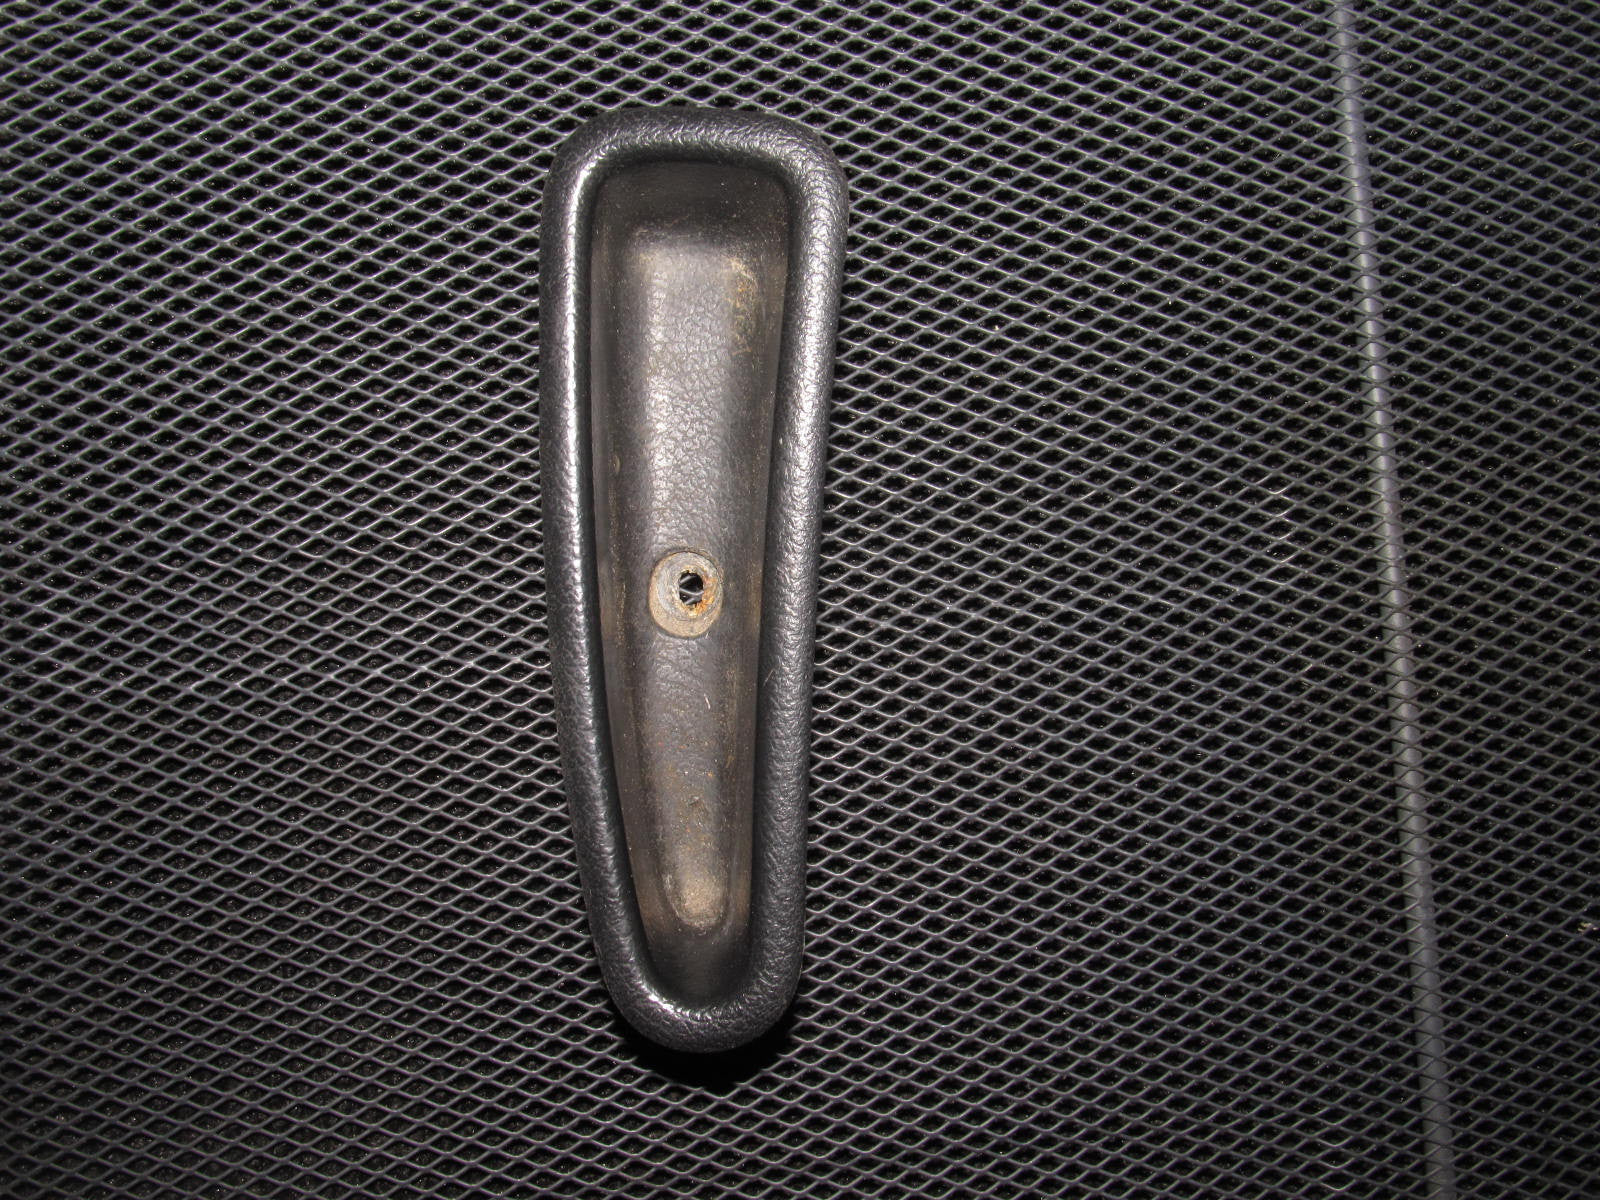 88-91 Honda CRX OEM Door Handle Pouch - Driver's Side - Left